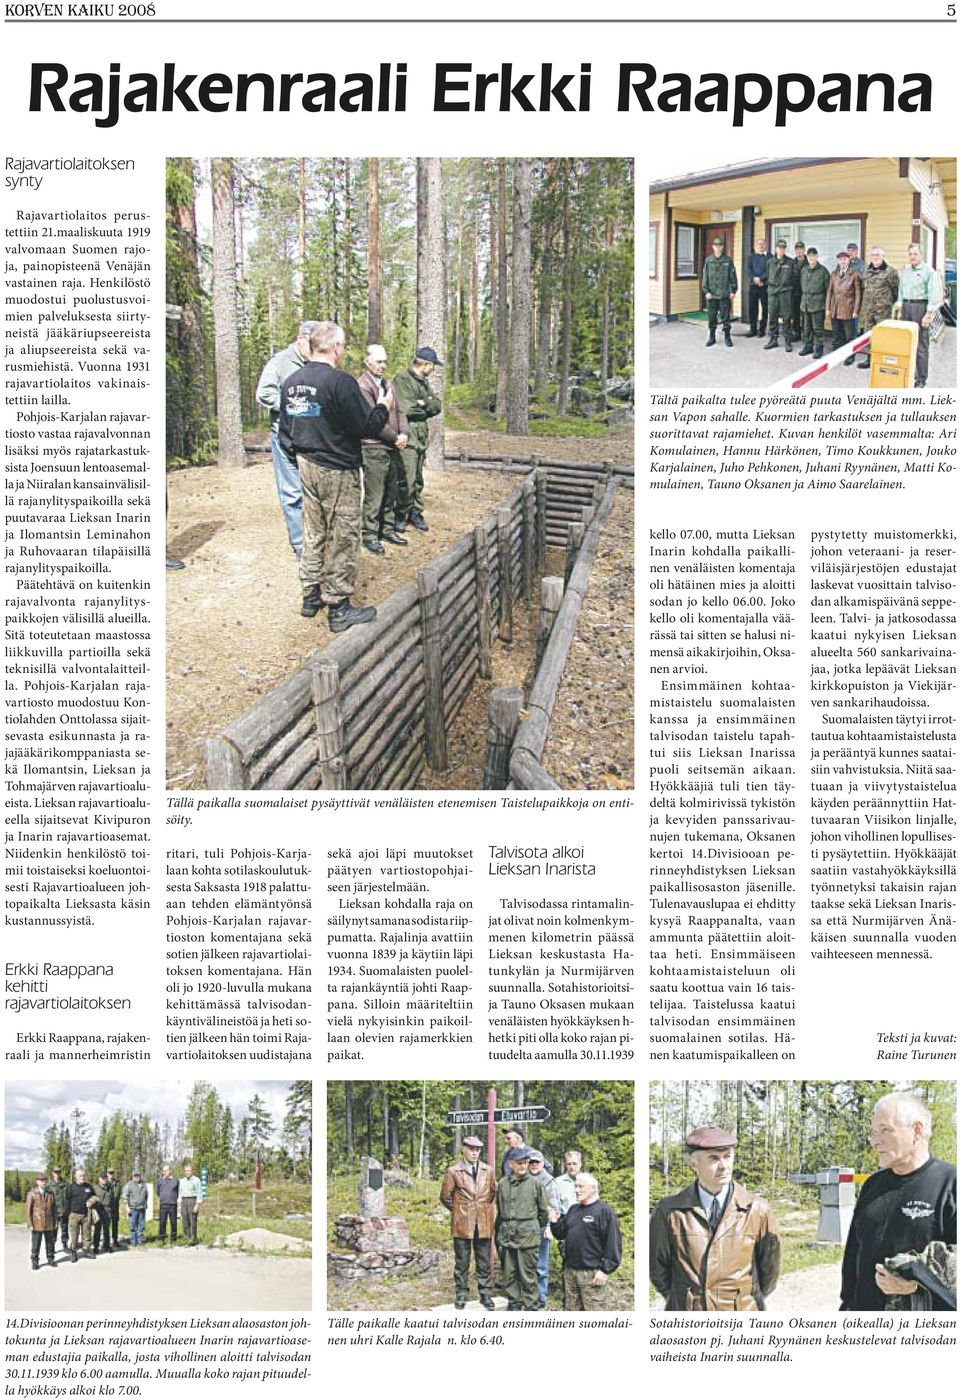 Pohjois-Karjalan rajavartiosto vastaa rajavalvonnan lisäksi myös rajatarkastuksista Joensuun lentoasemalla ja Niiralan kansainvälisillä rajanylityspaikoilla sekä puutavaraa Lieksan Inarin ja